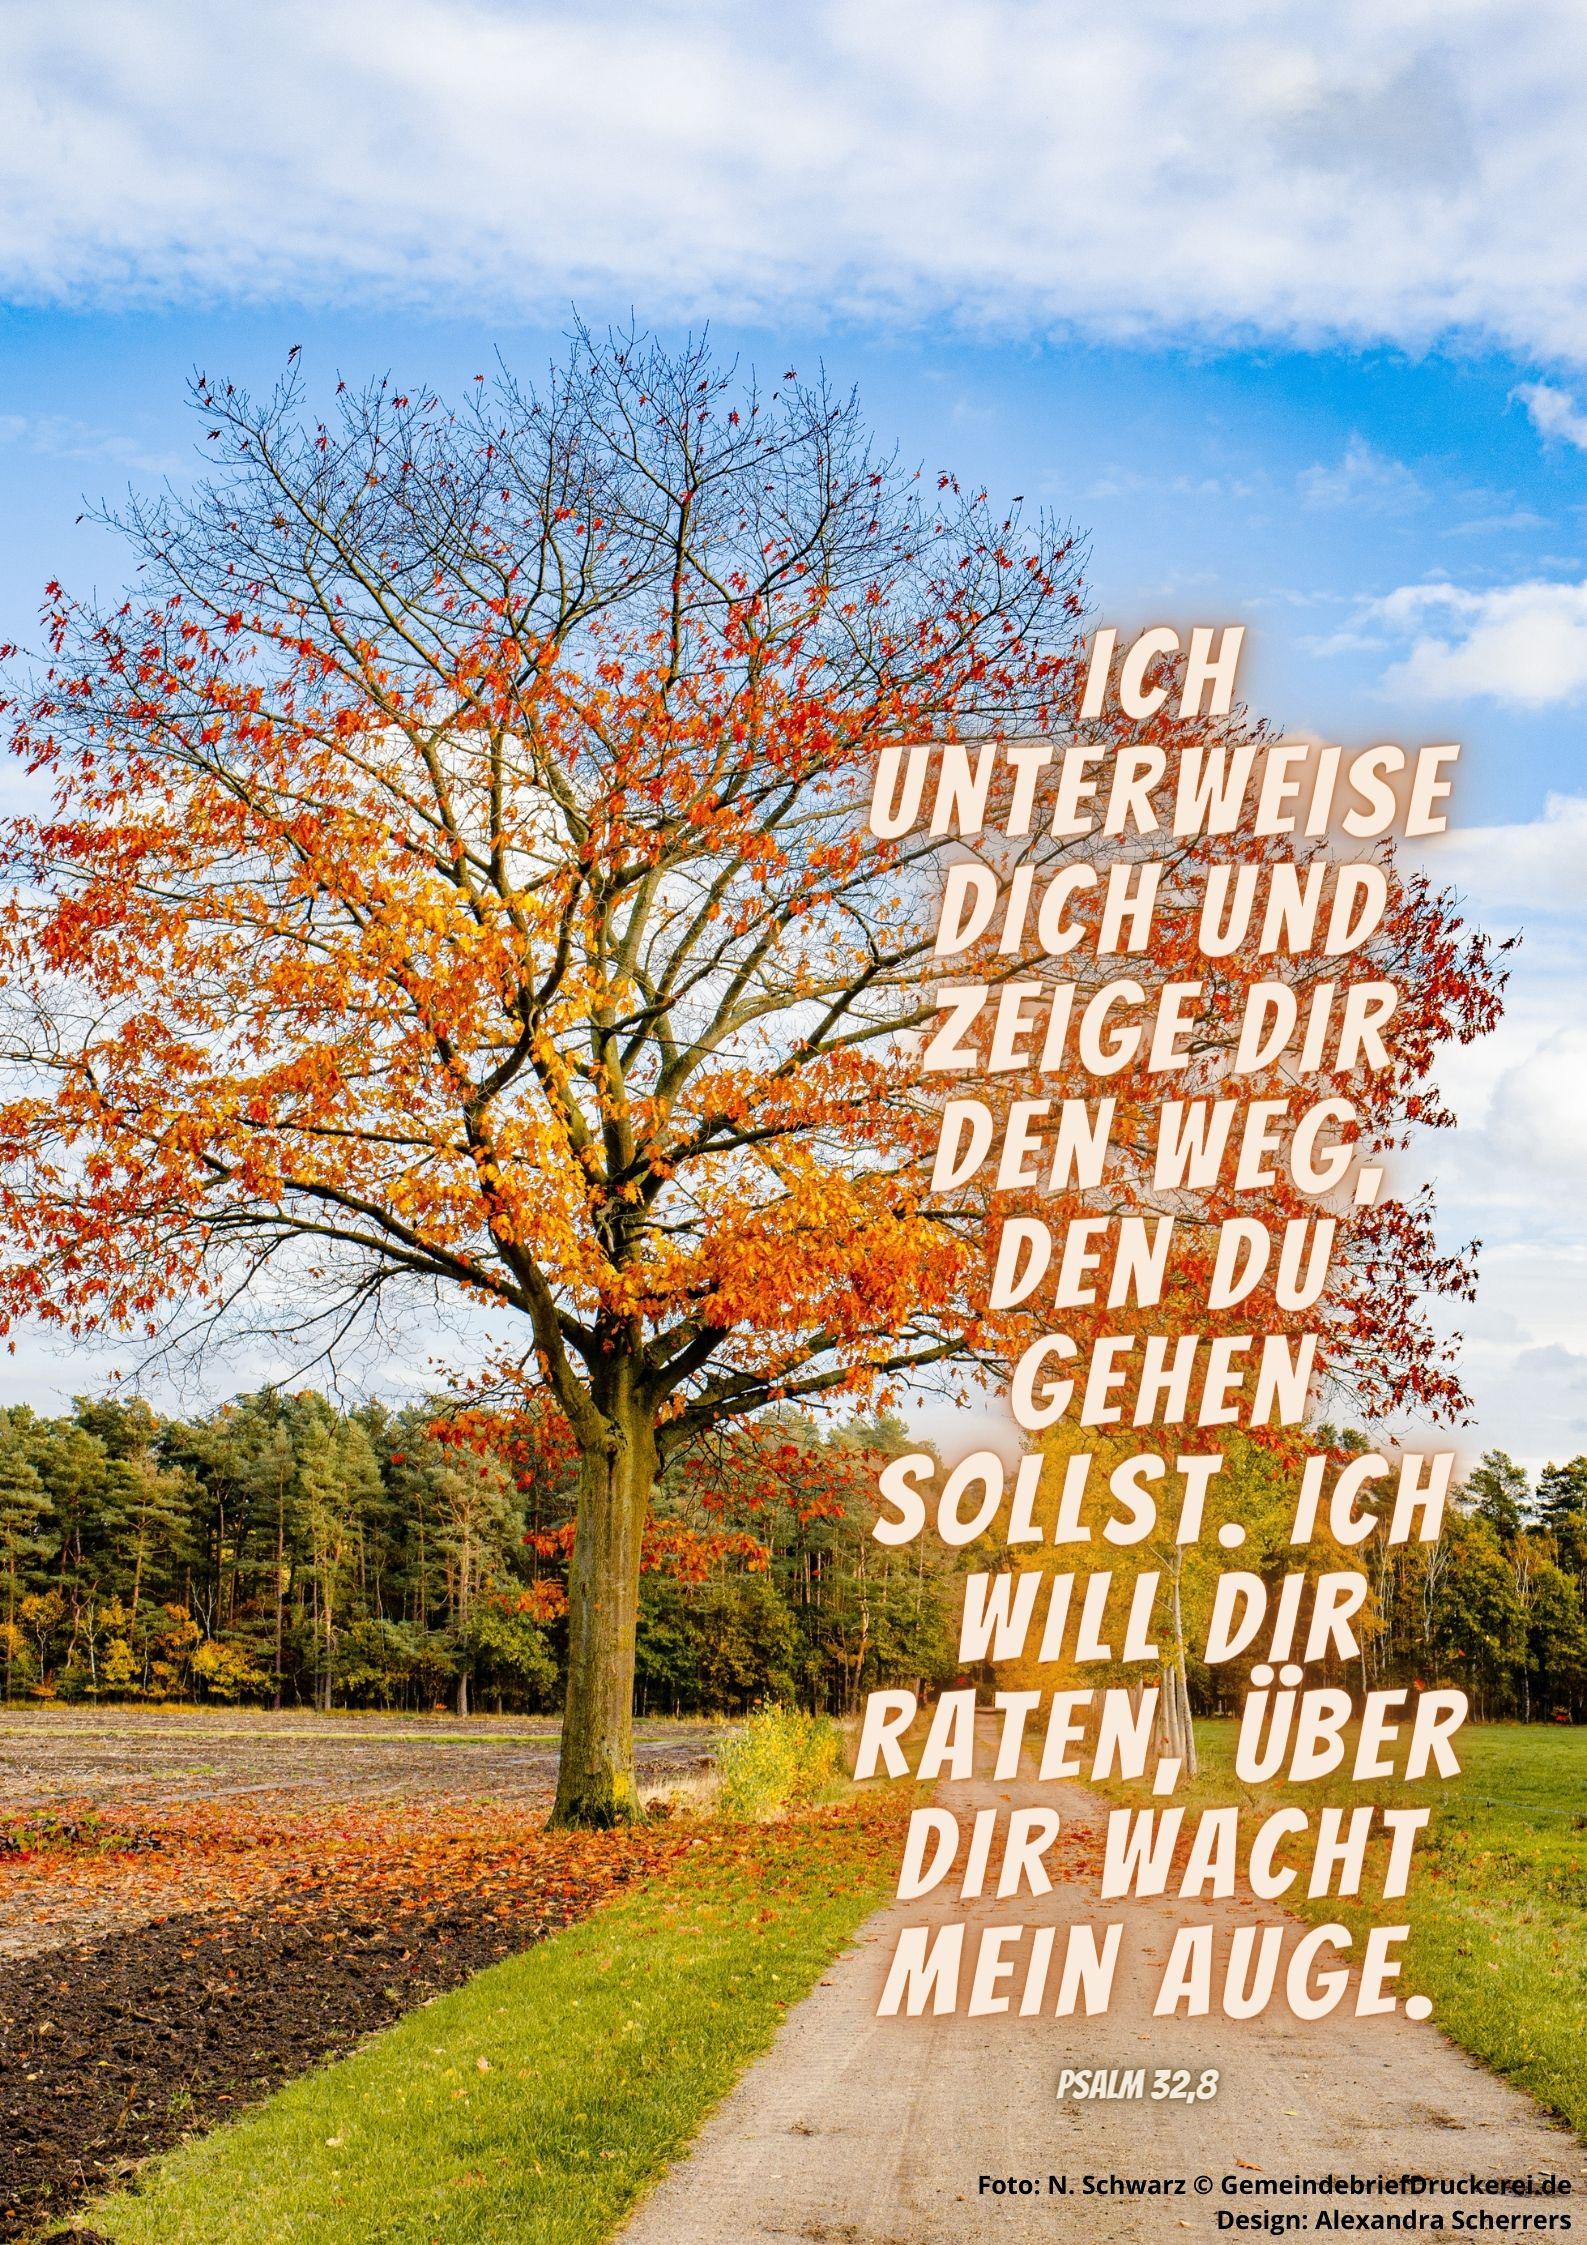 Psalm 32,8 (c) Foto: N. Schwarz © GemeindebriefDruckerei.de / Design: A. Scherrers